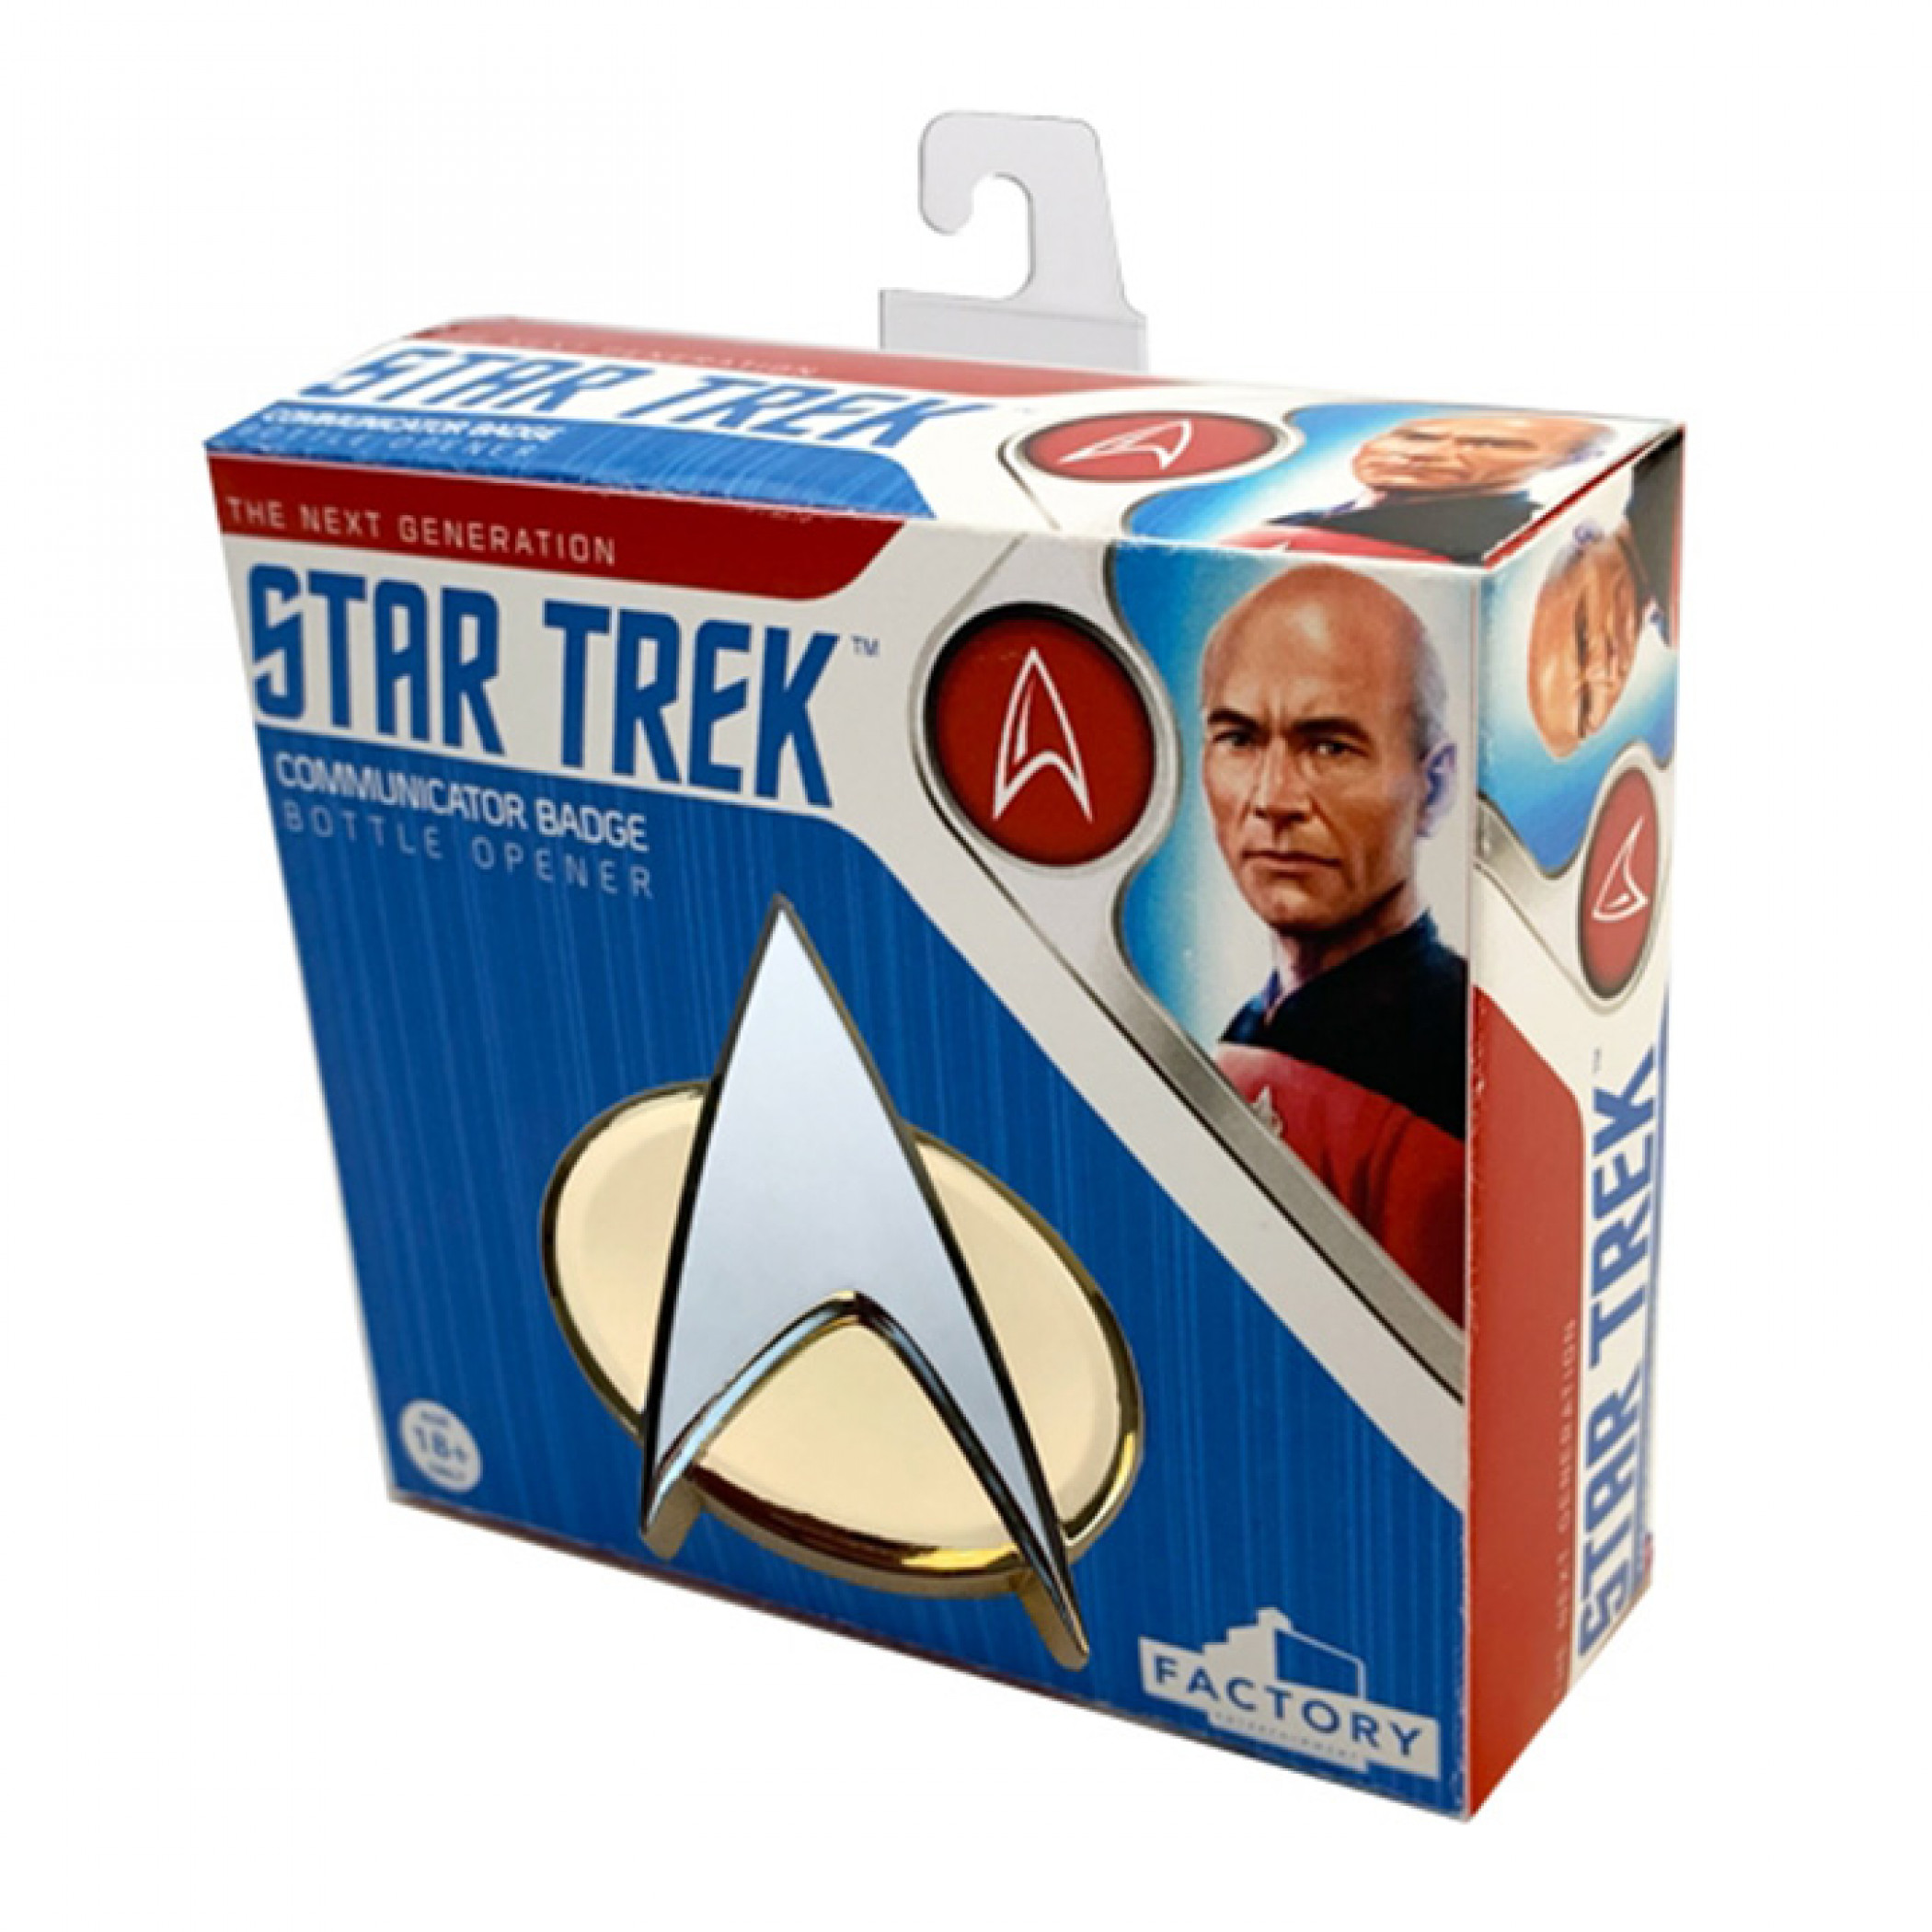 Star Trek - The Next Generation Communicator Badge Bottle Opener